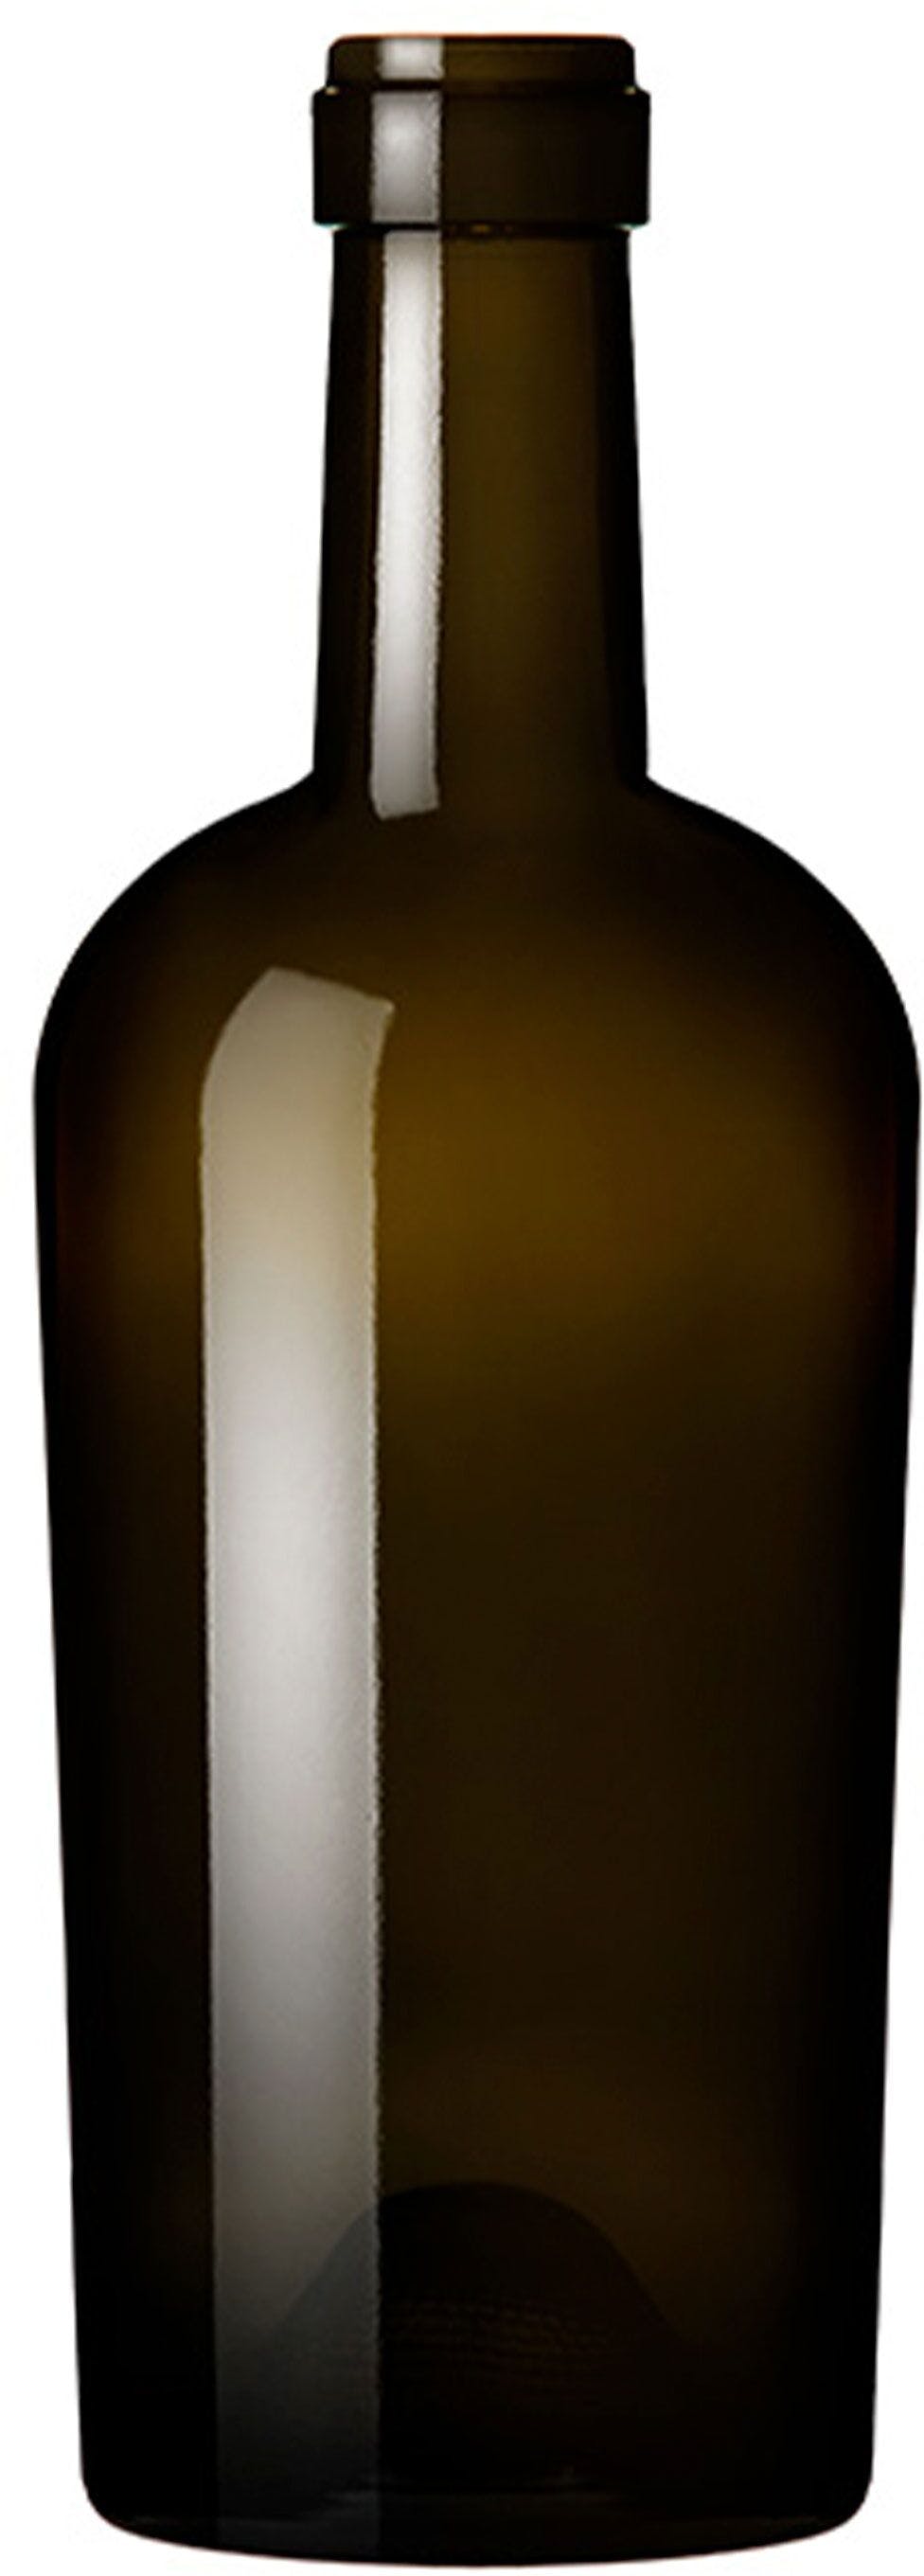 Botella BORDELESA  REGINE 500 ml BG-corcho